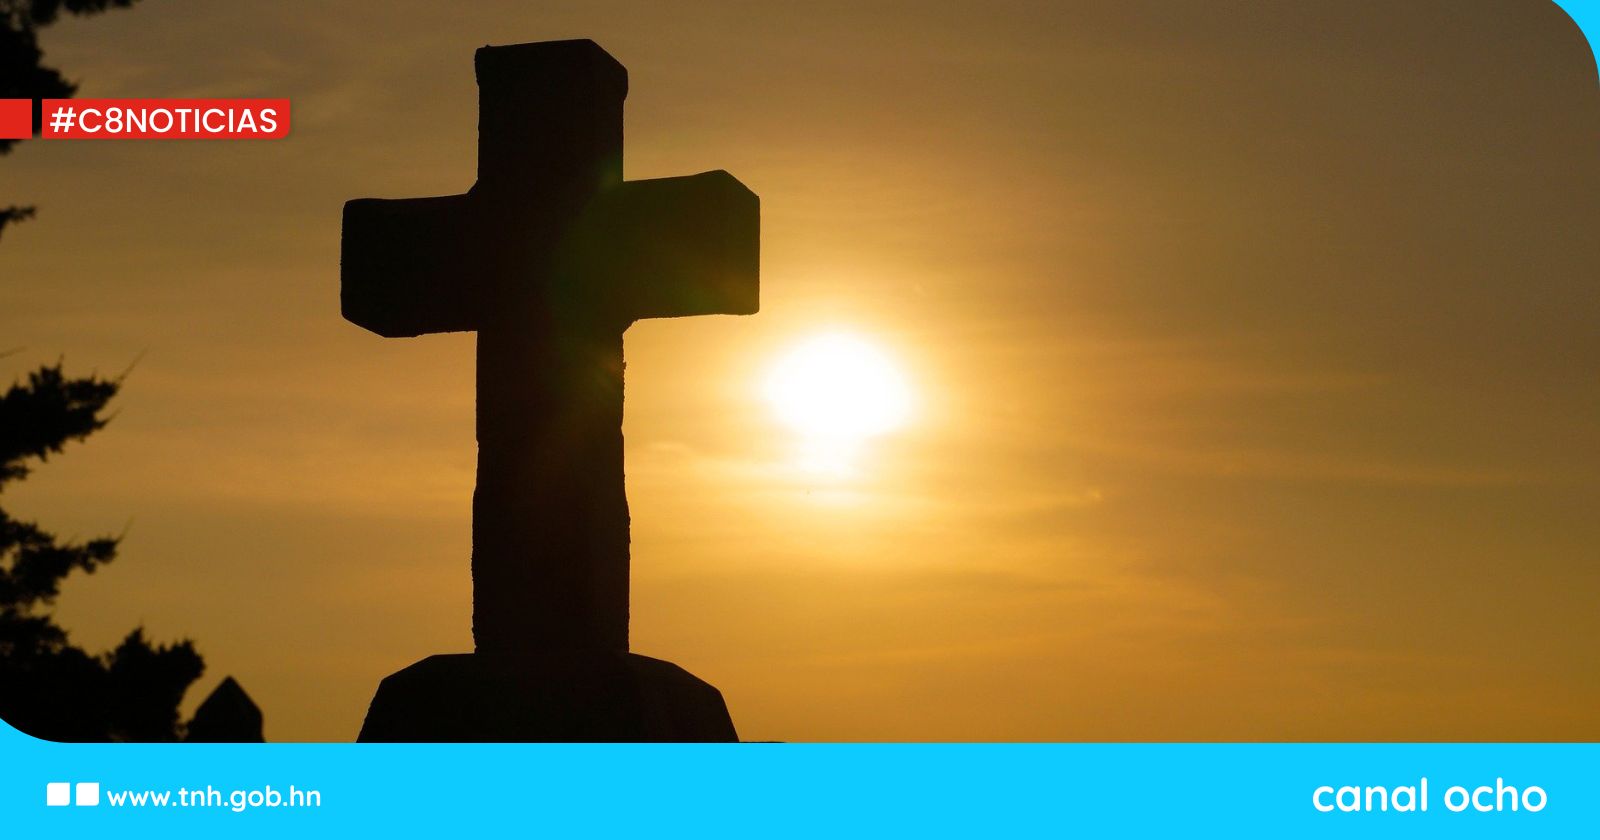 3 de mayo: Hoy se celebra el Día de la Cruz